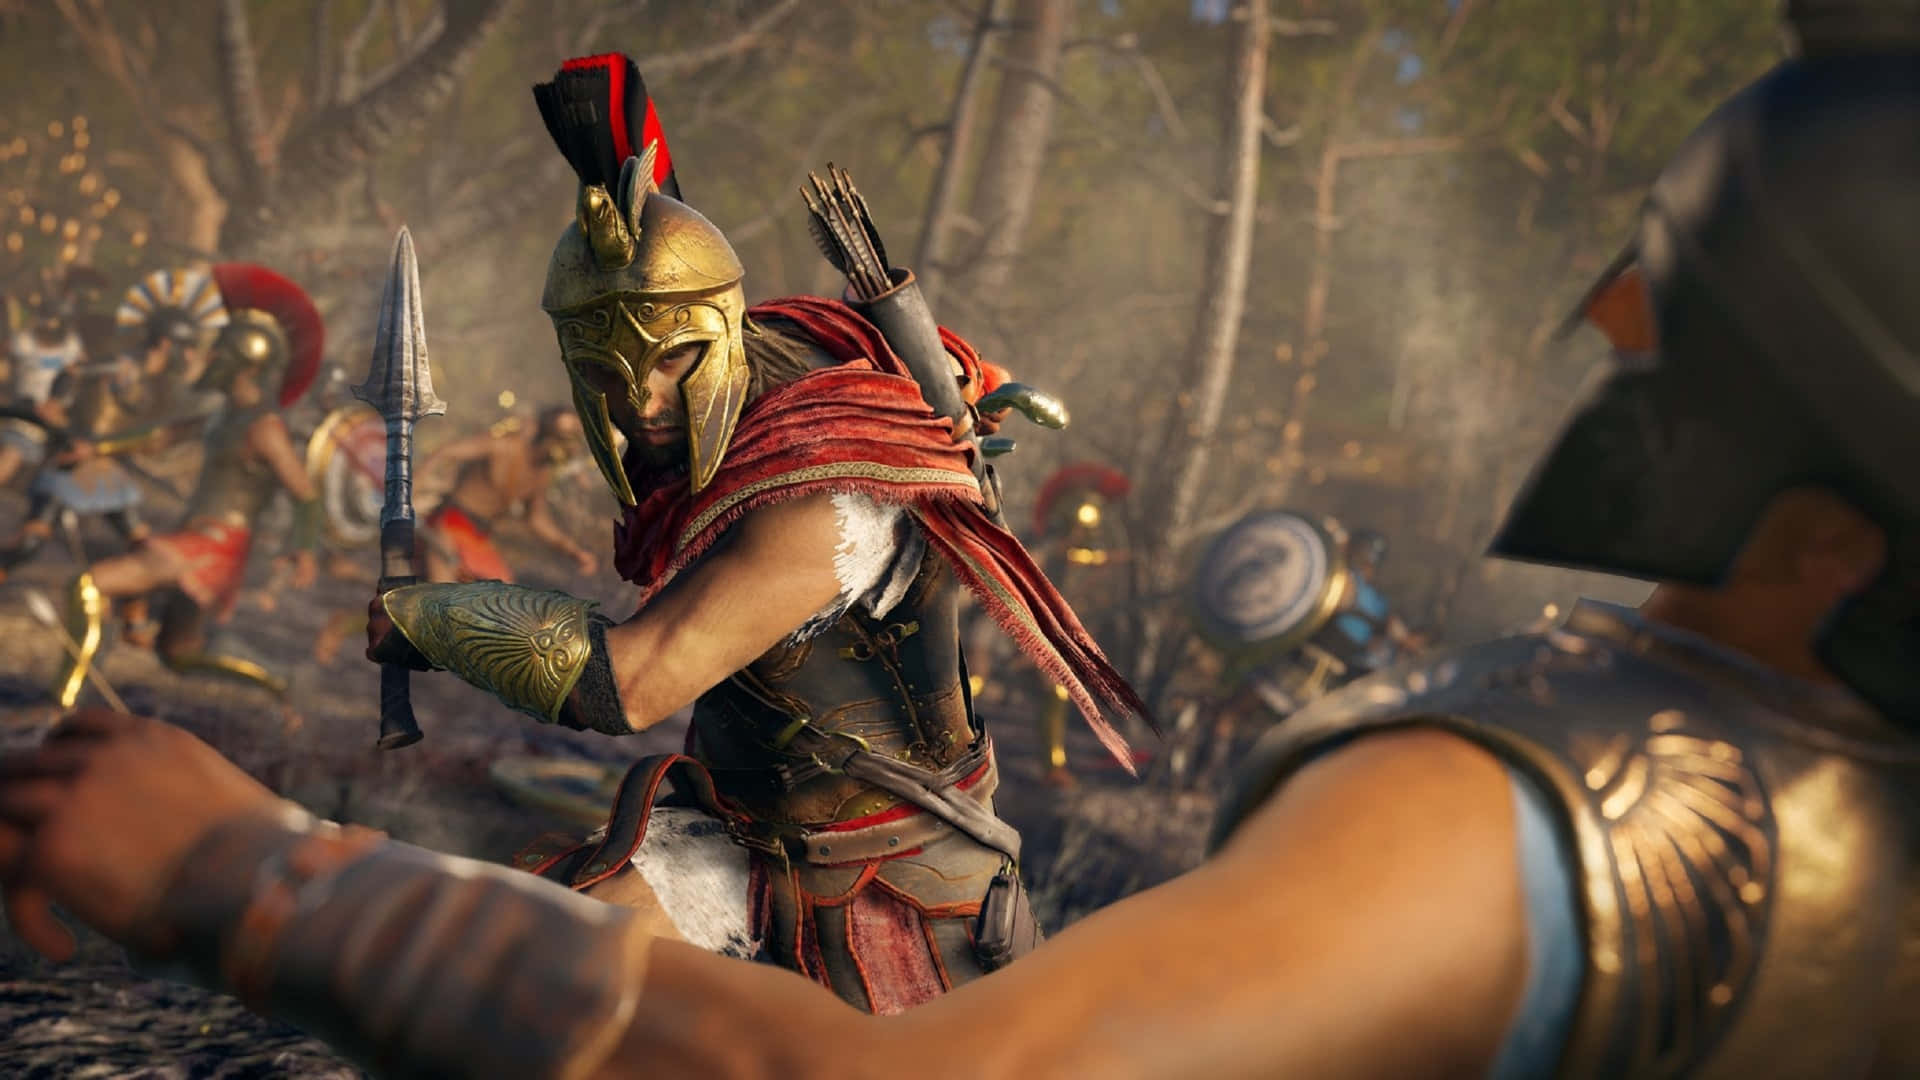 1920x1080bakgrundsbild Till Assassin's Creed Odyssey-spelet.